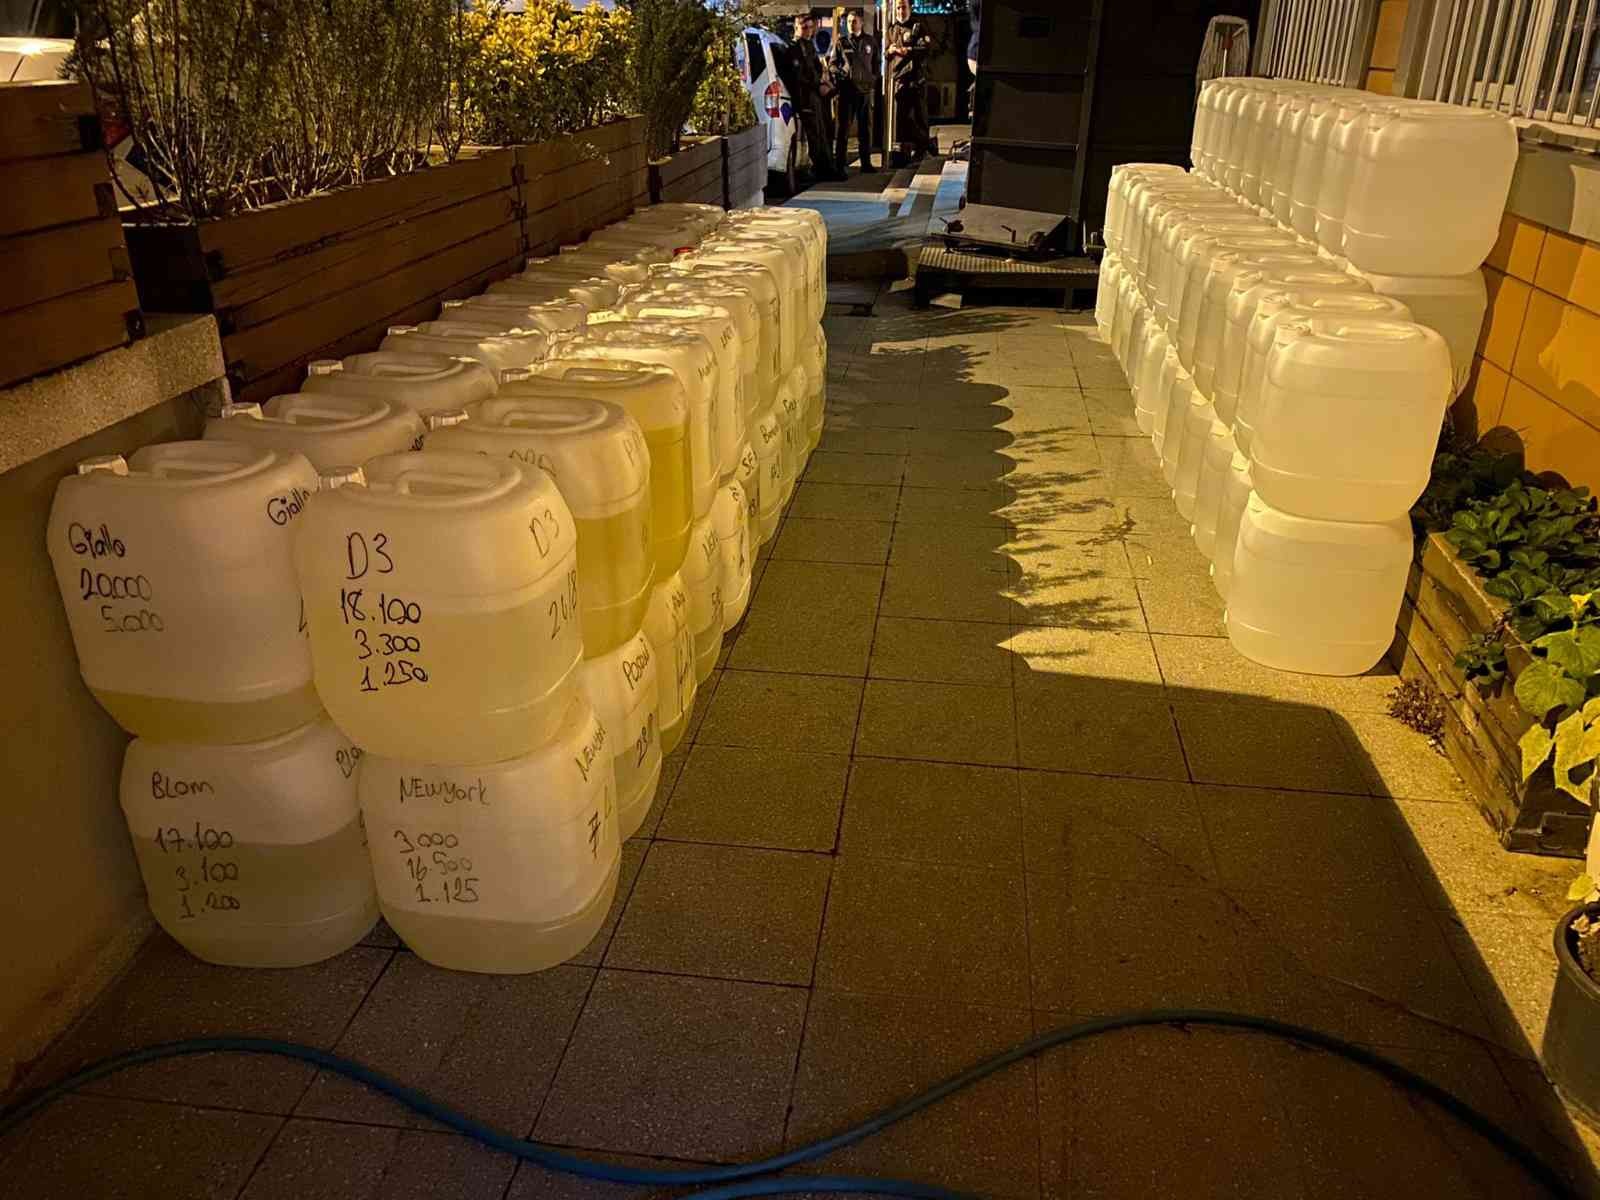 Esenler’de 1,5 ton kaçak alkol ve 3 milyon TL değerinde parfüm ele geçirildi #istanbul